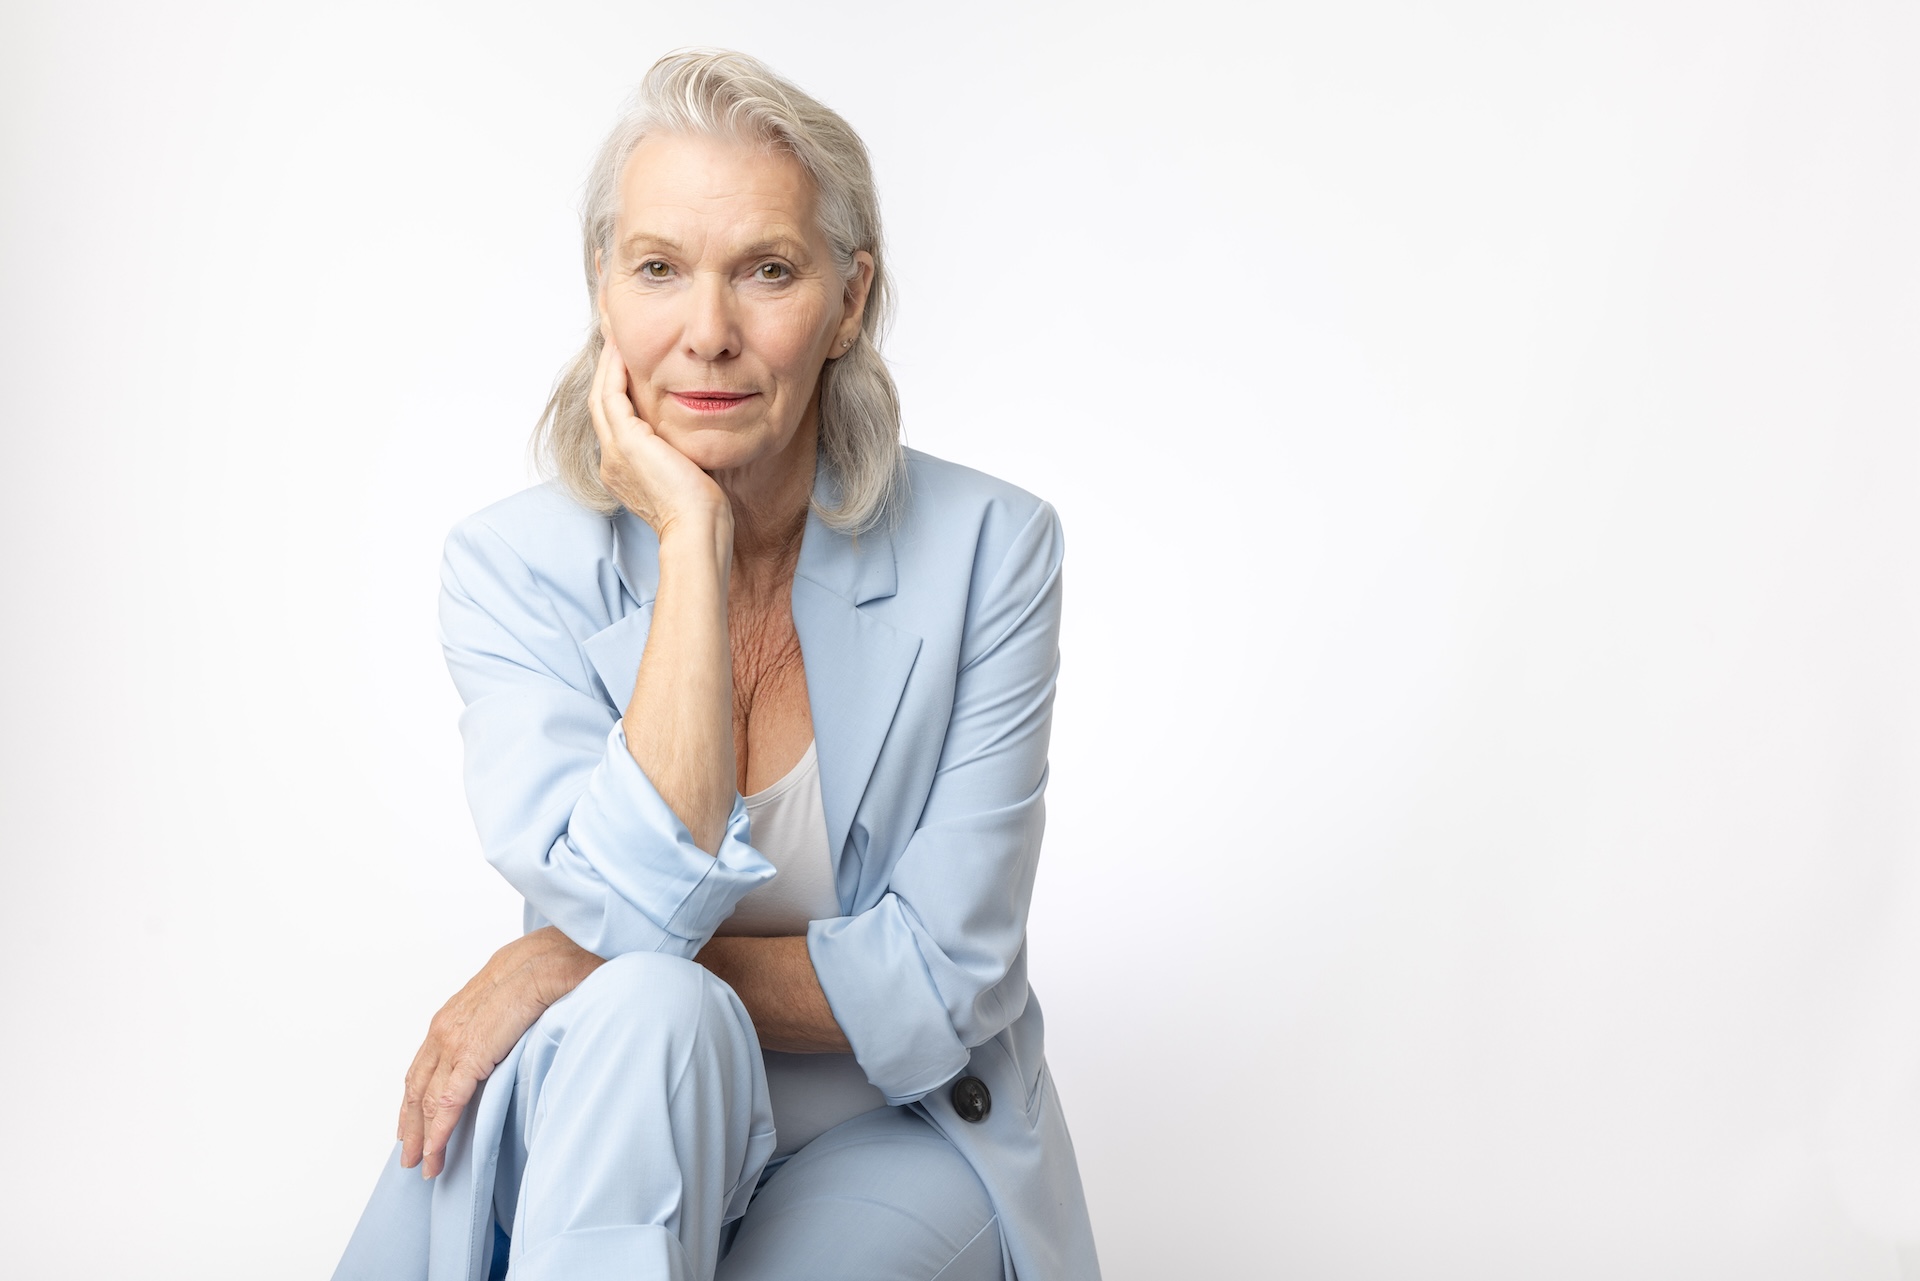 Kvinne 73 år i lyseblå dress, uredd og direkte i blikket, proppfull av selvtillit